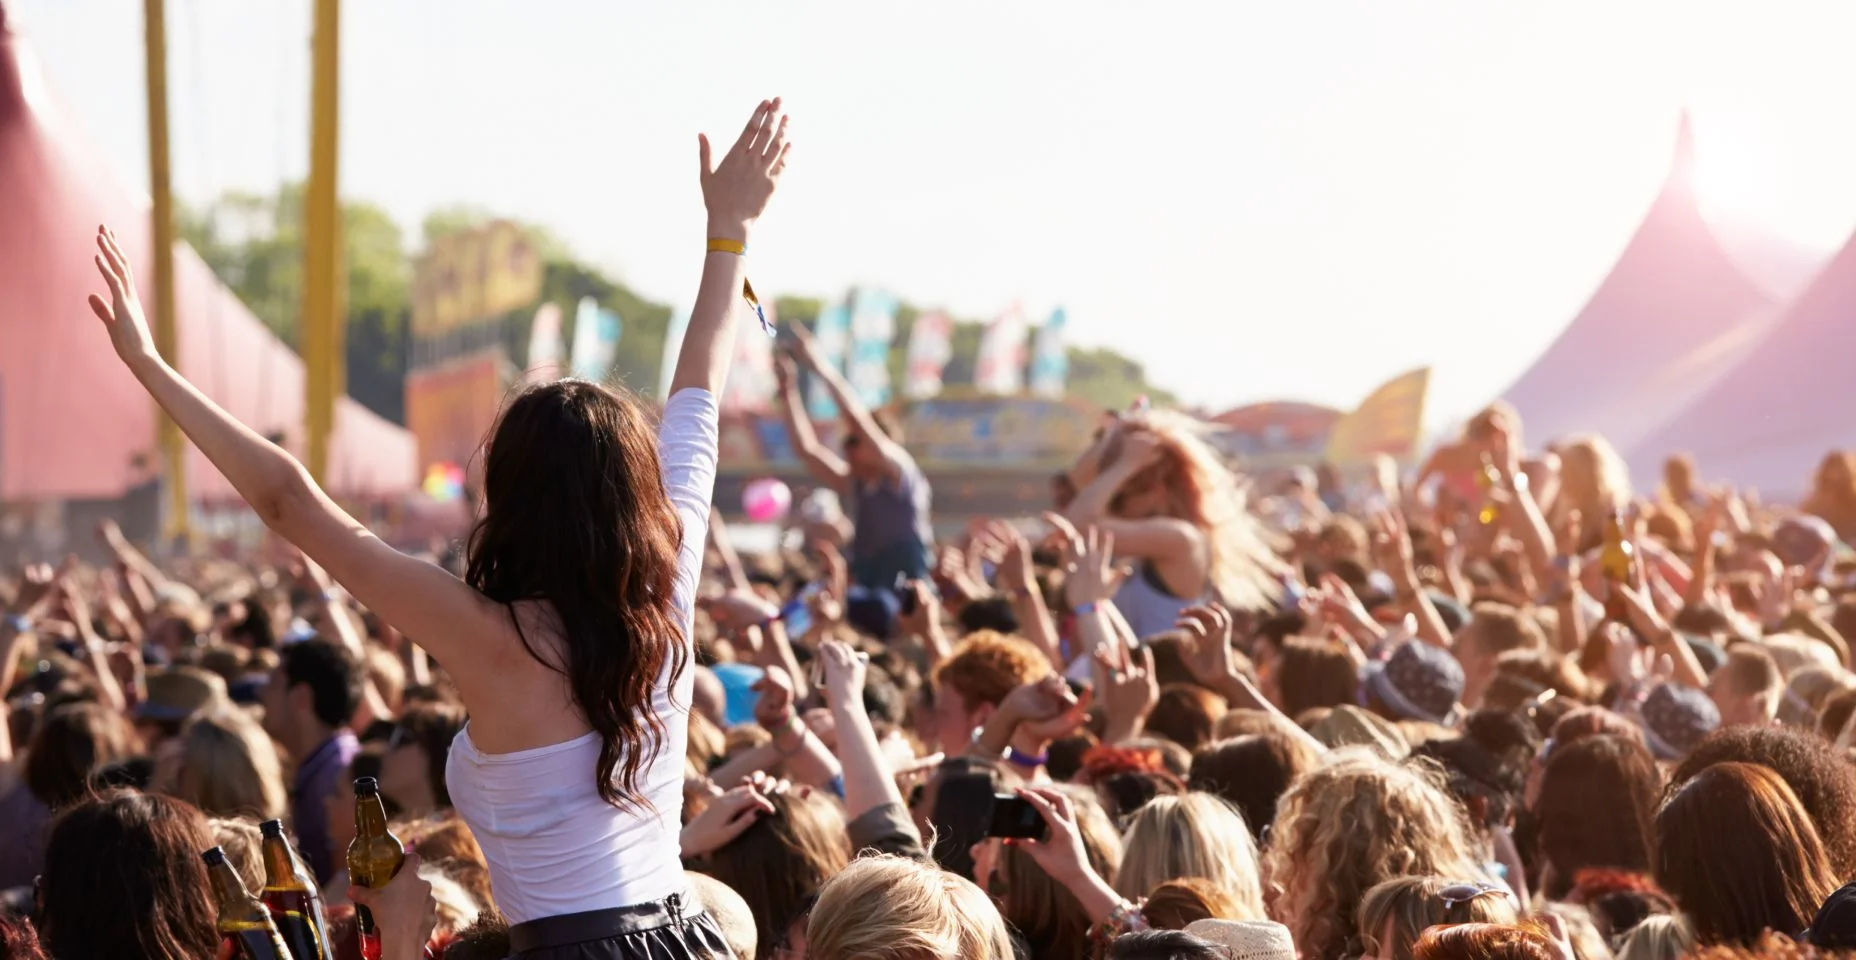 Pessoas com seus braços no ar no festival de música